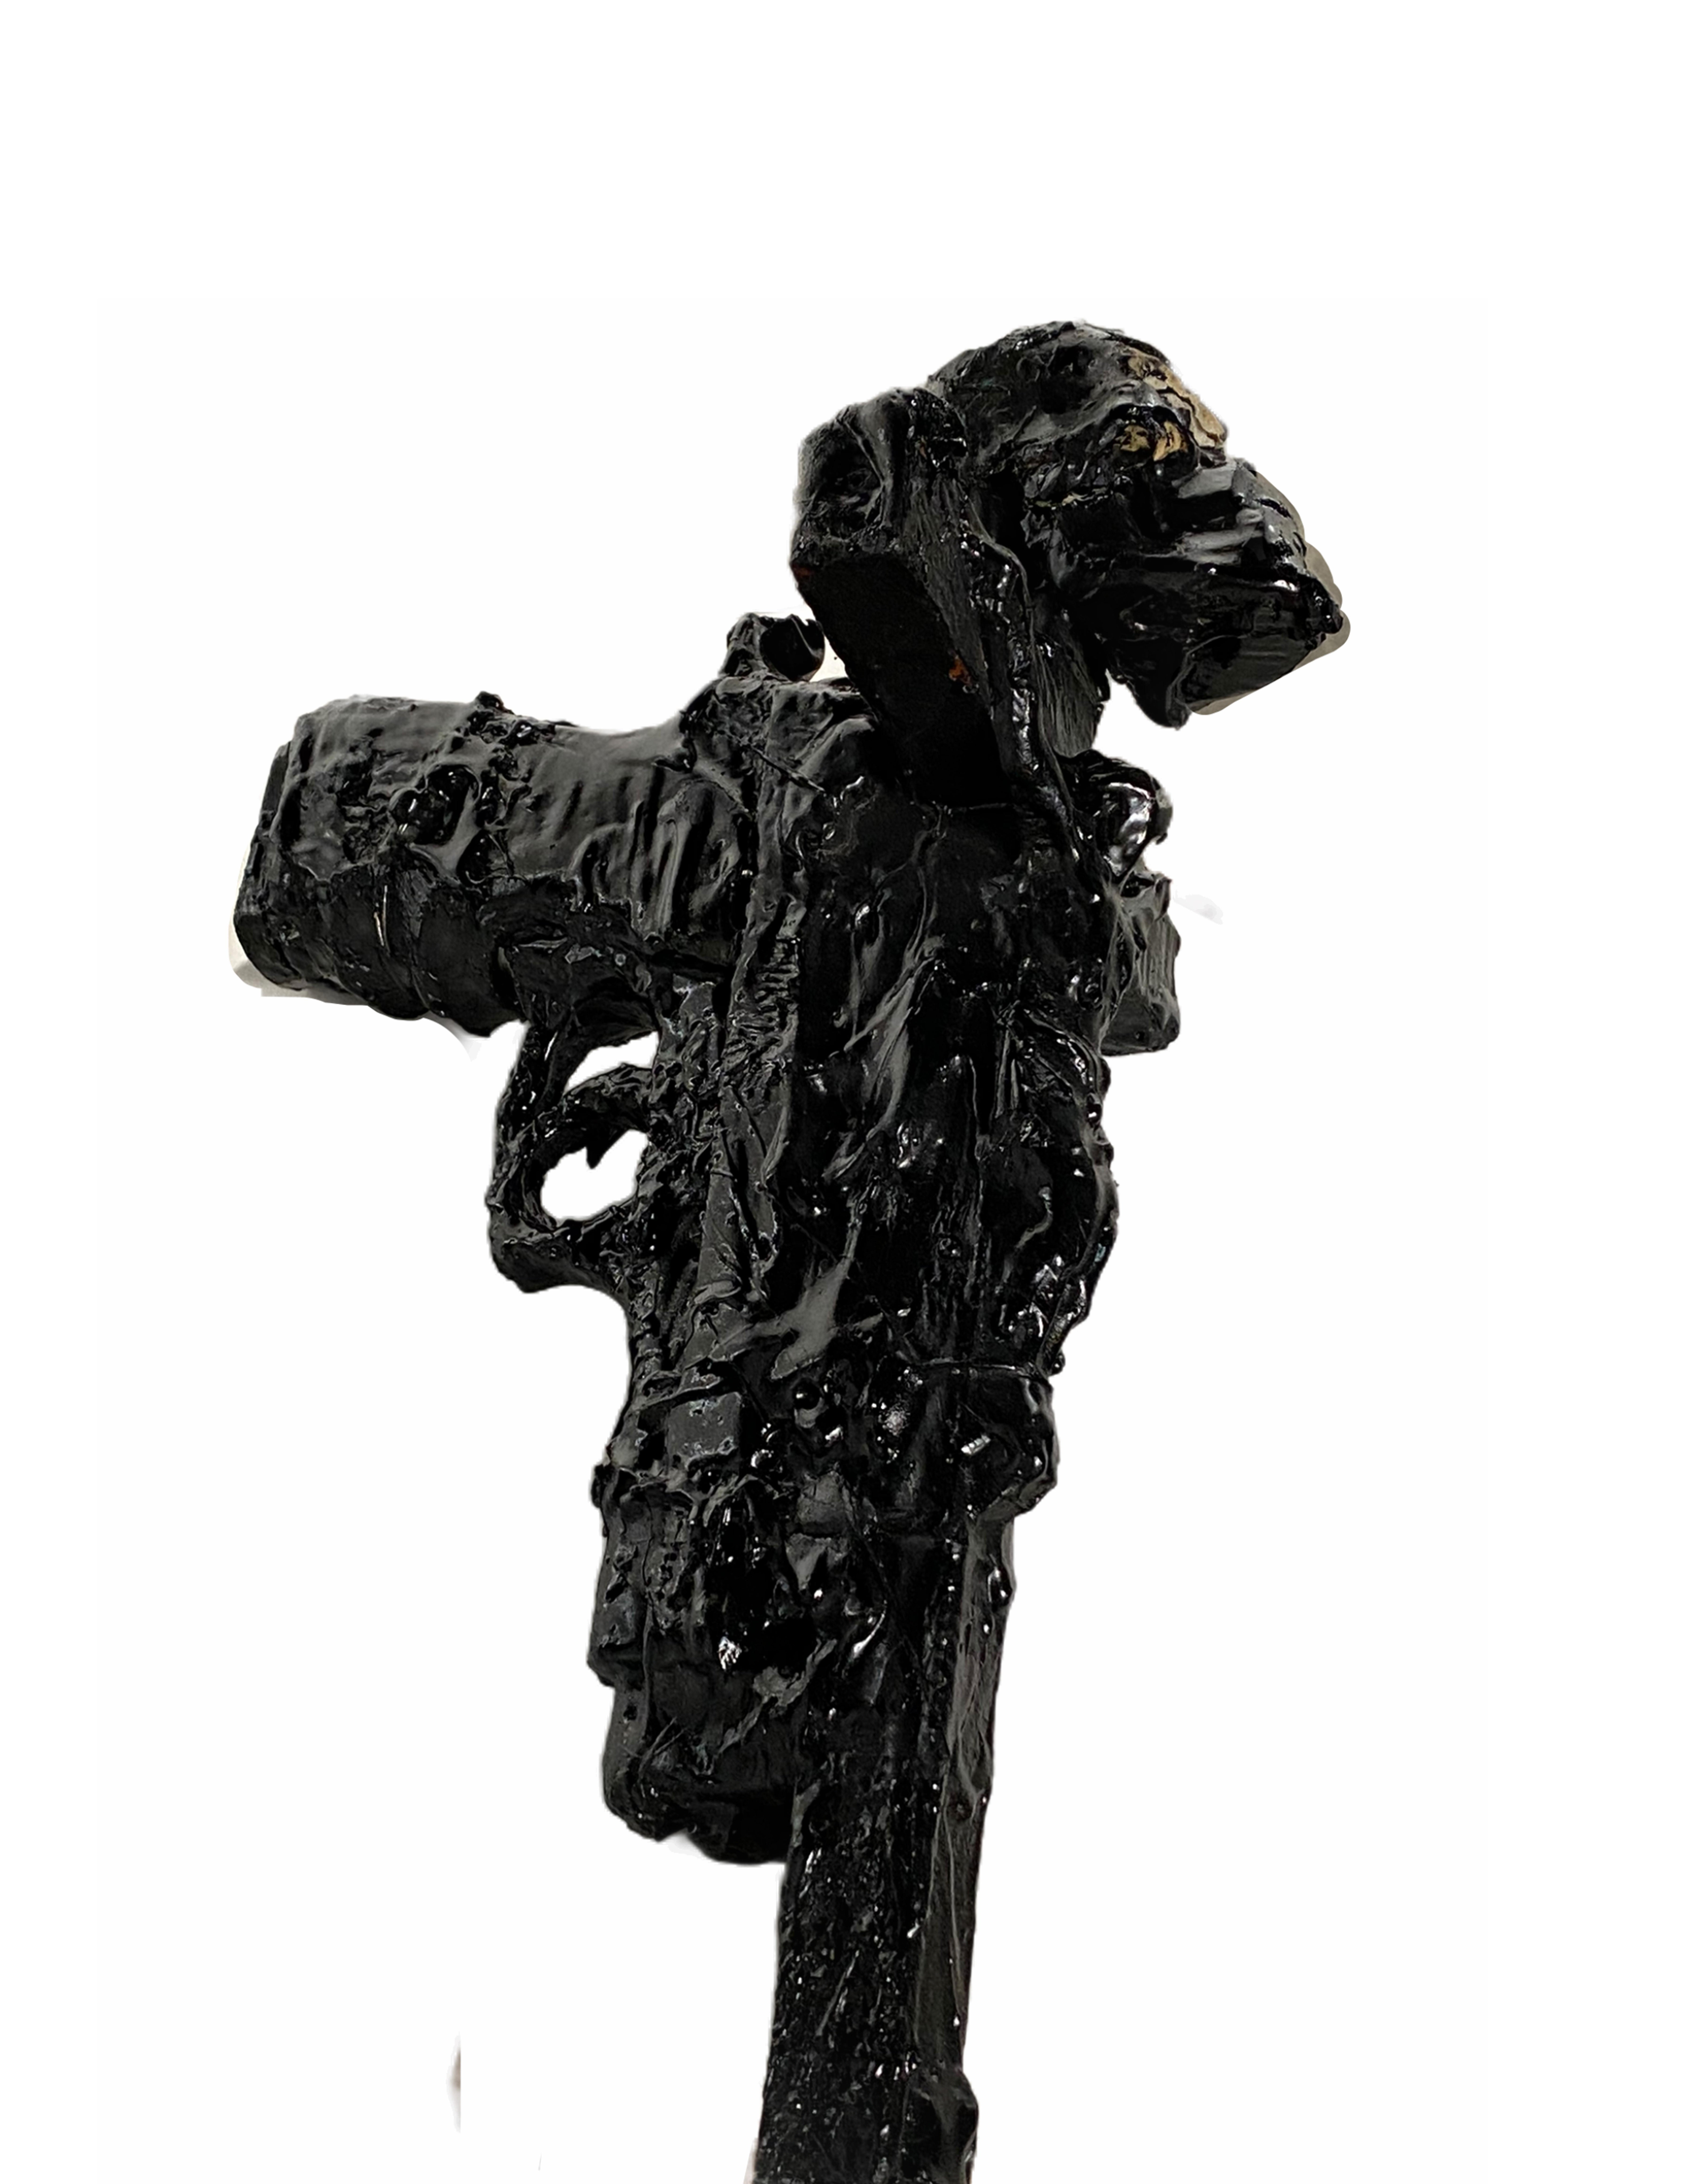 American Black Sculptural Cross and Gun in TAR, 21st Century by Mattia Biagi